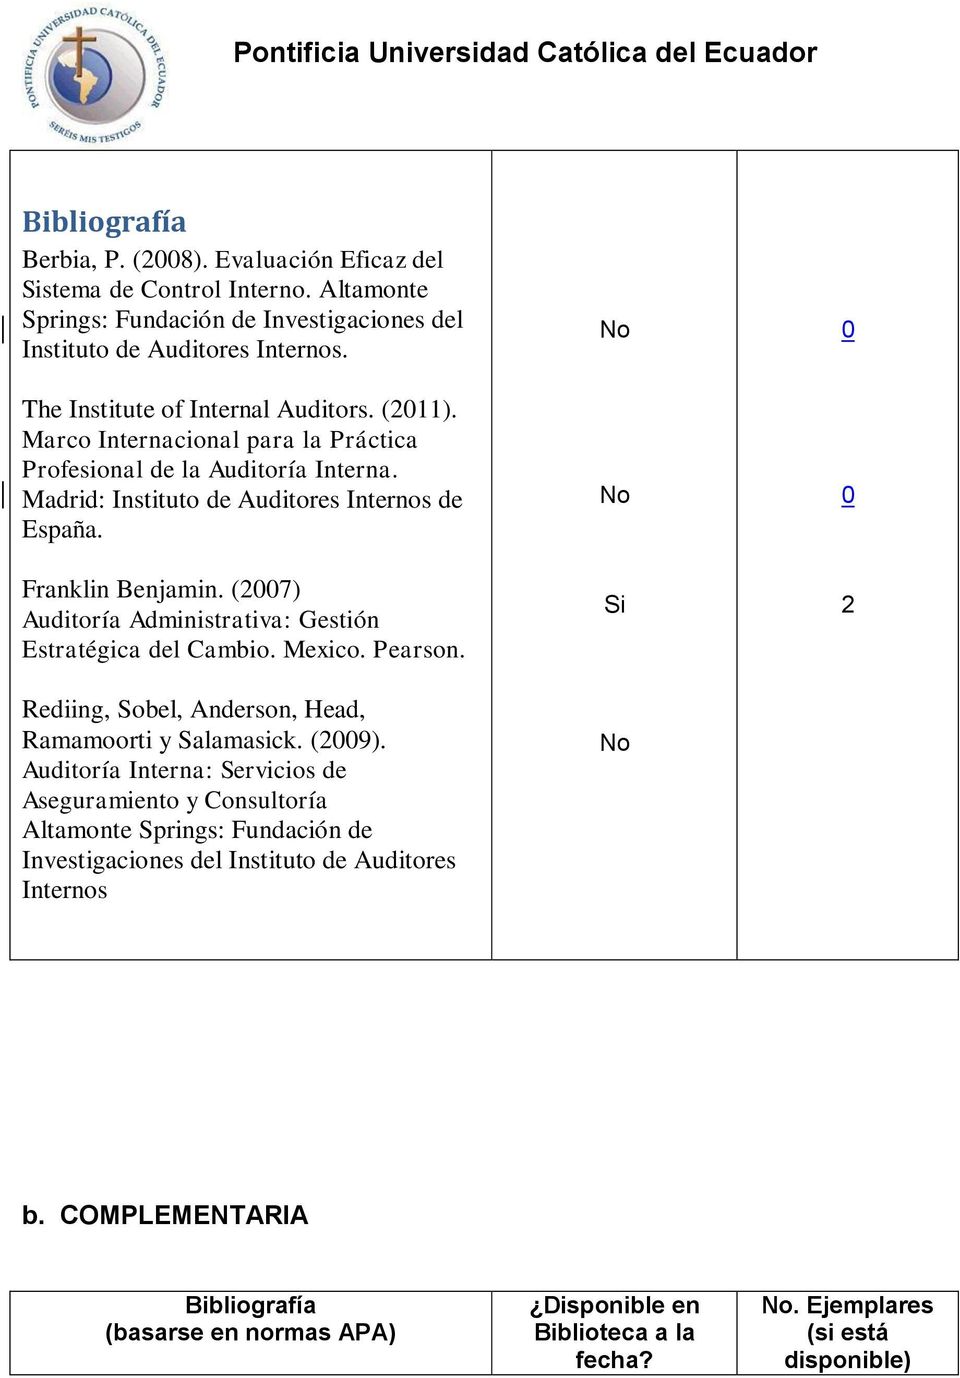 (007) Auditoría Administrativa: Gestión Estratégica del Cambio. Mexico. Pearson. Rediing, Sobel, Anderson, Head, Ramamoorti y Salamasick. (009).